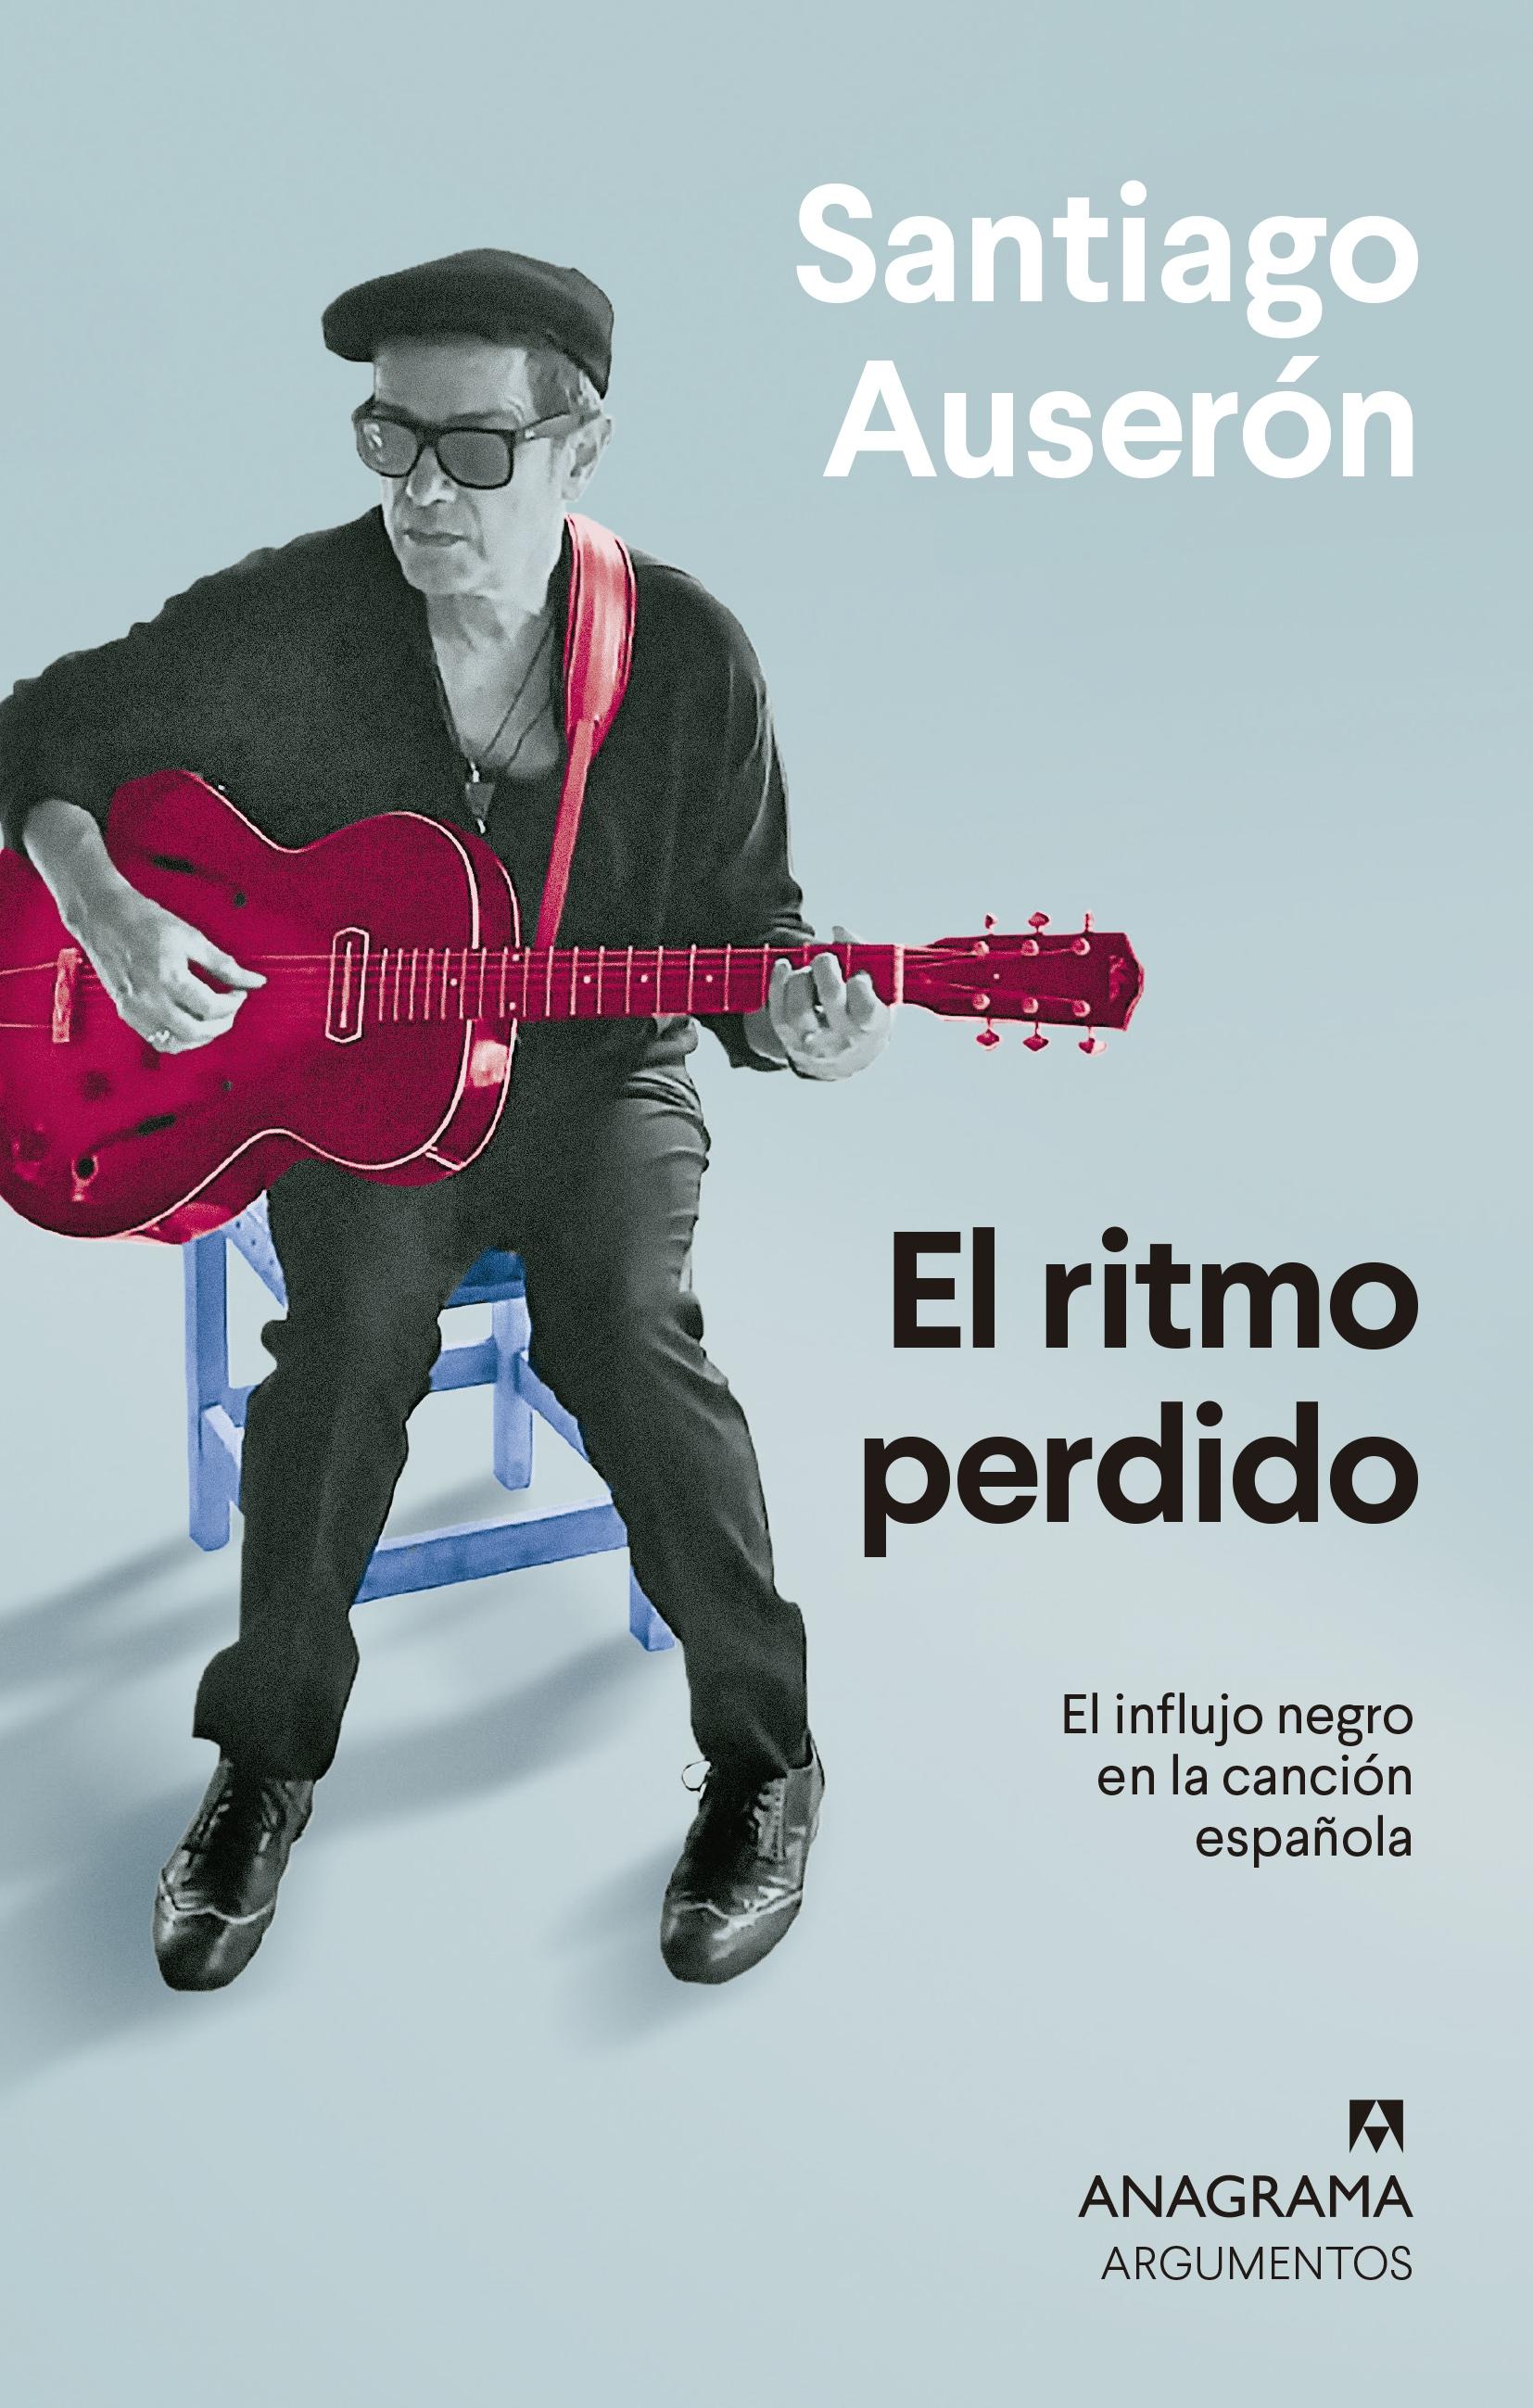 El ritmo perdido "El influjo negro en la canción española"